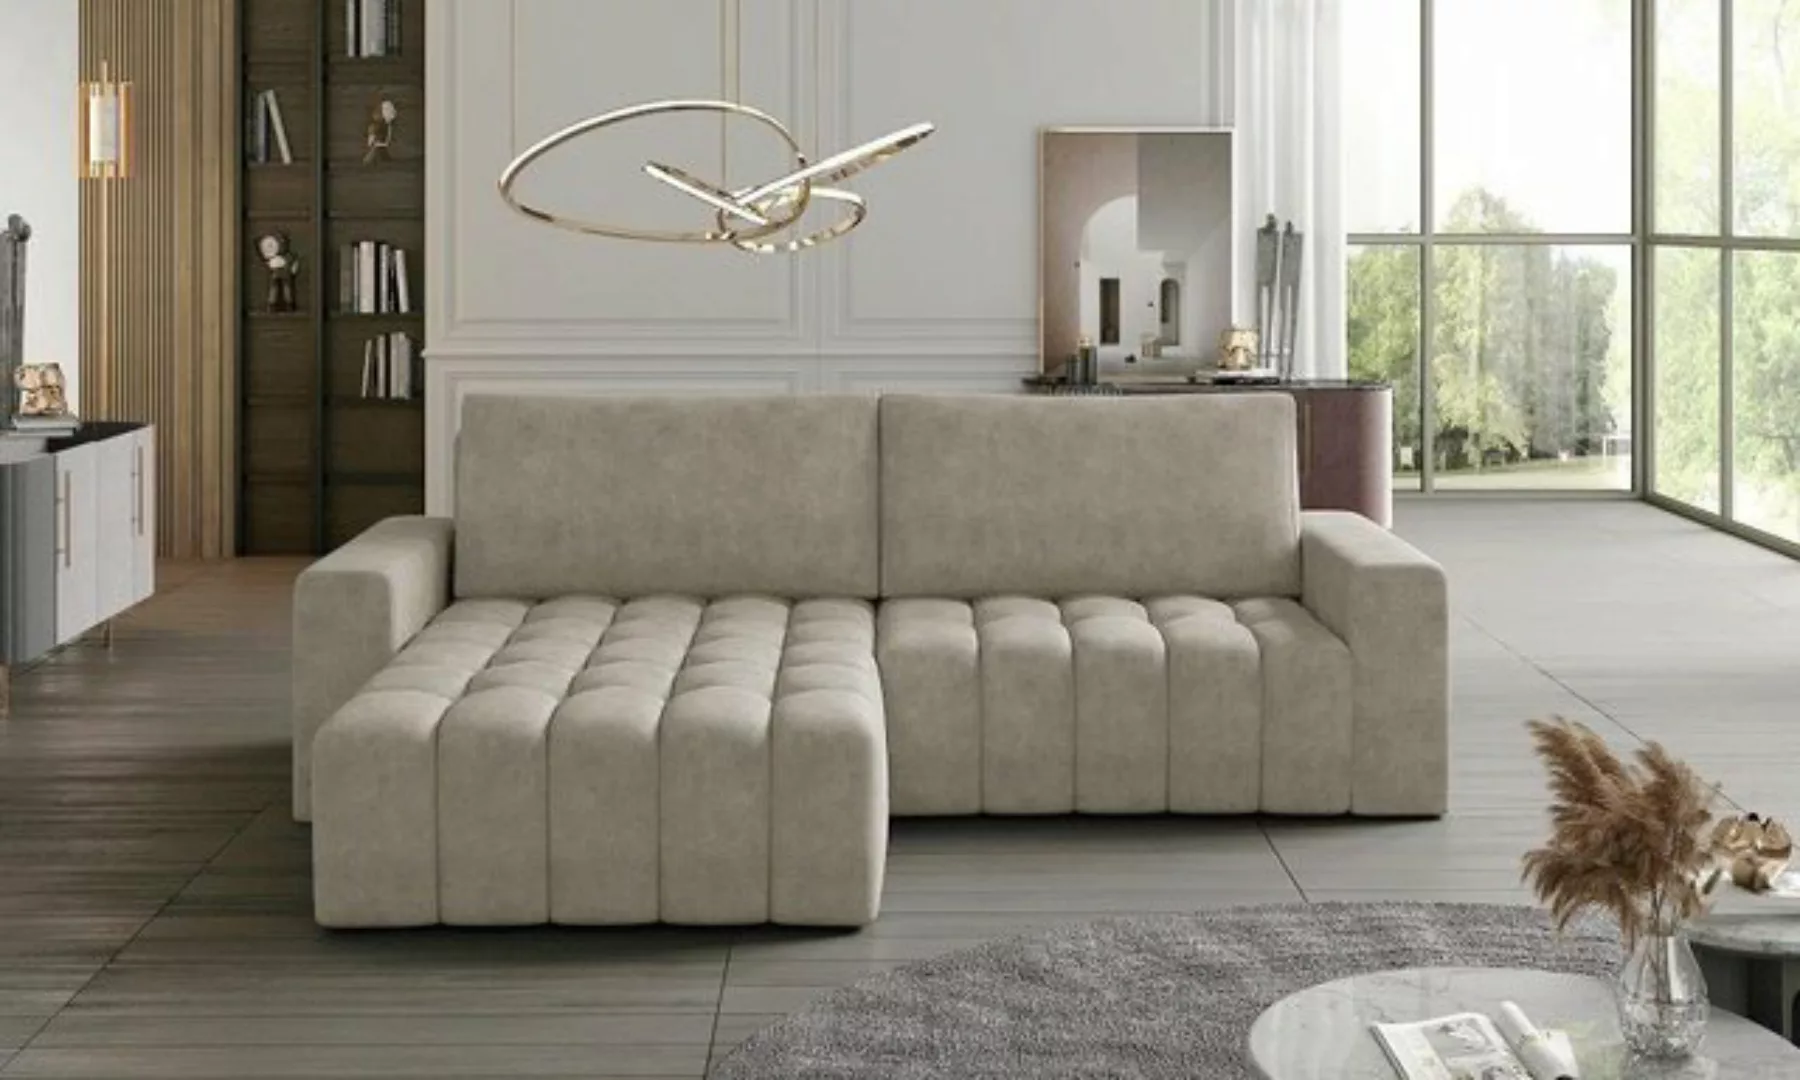 JVmoebel Ecksofa Ecksofa Grau Stoff L Form Couch Design Couch Polster Texti günstig online kaufen